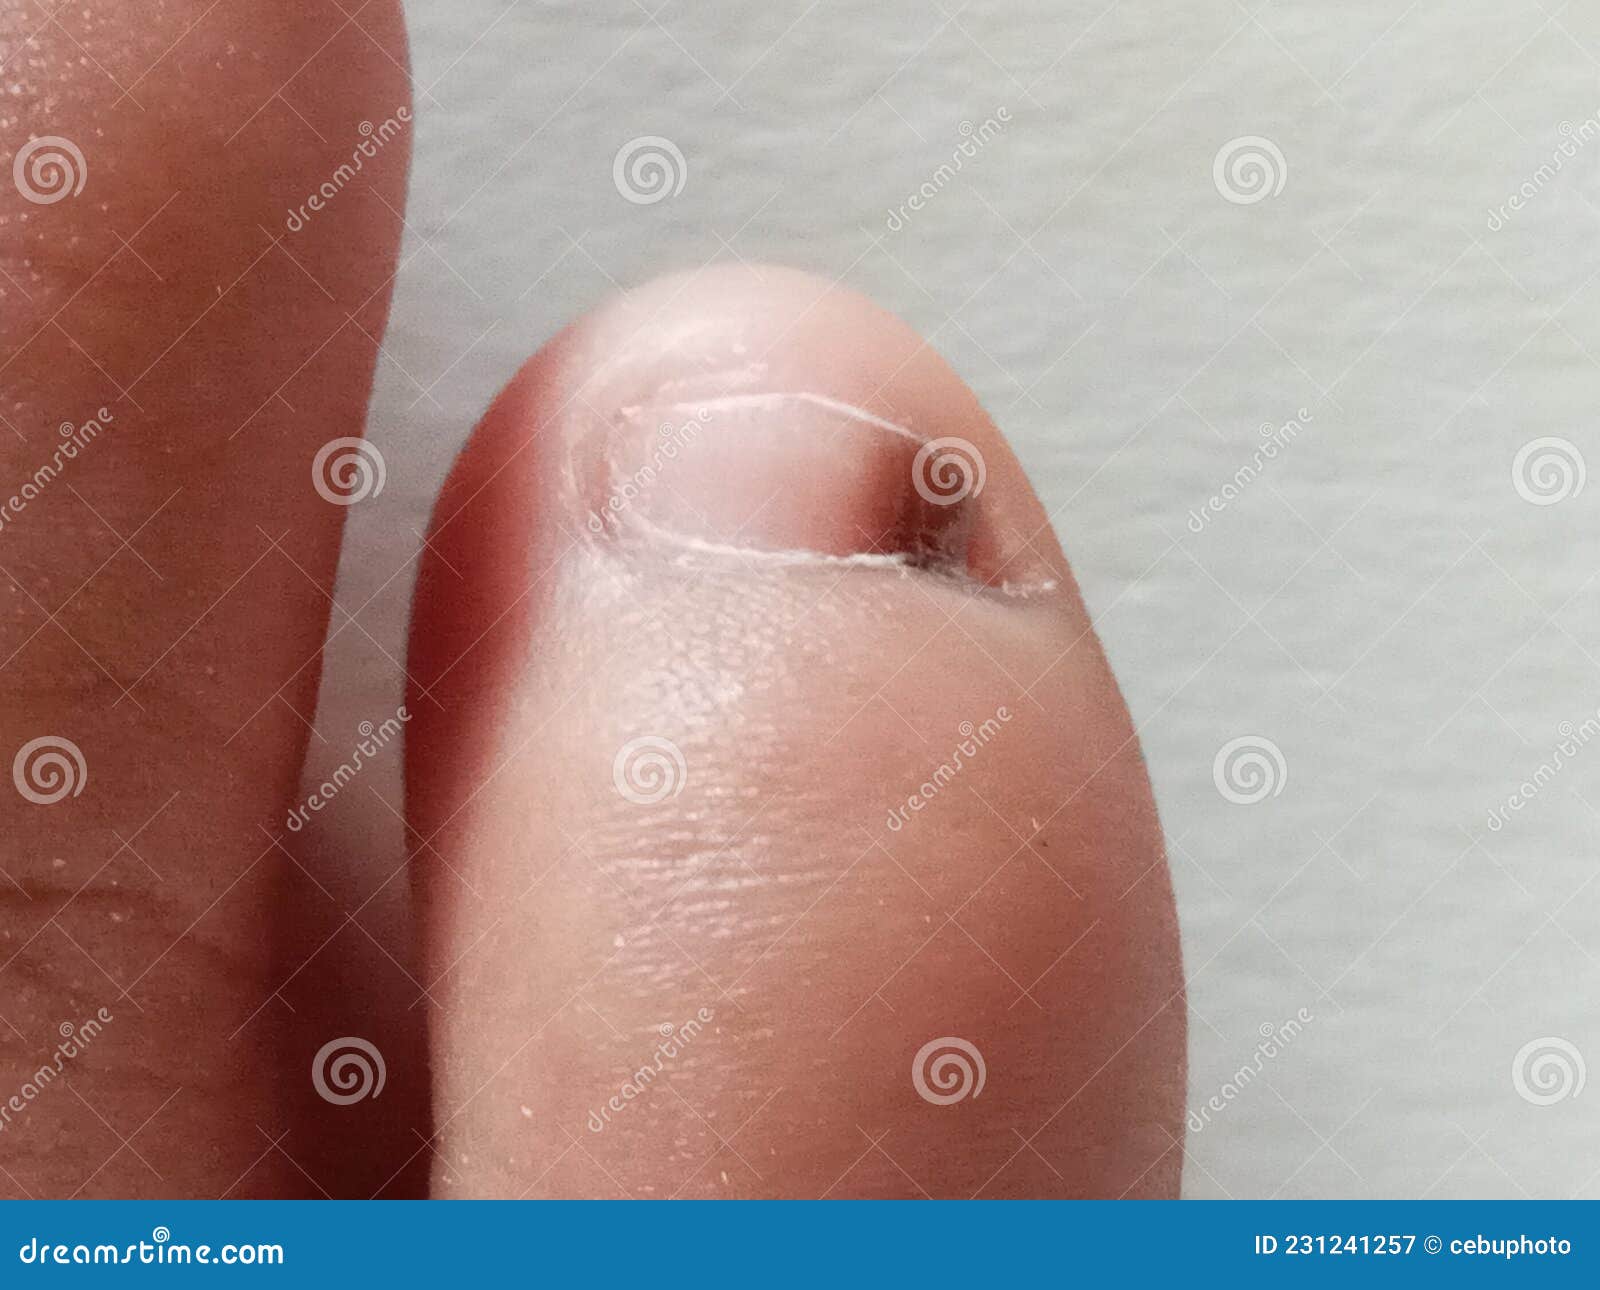 Toe Nail that Has a Dark Spot, Subungual Hematoma Stock Image - Image of  medical, clean: 231241257